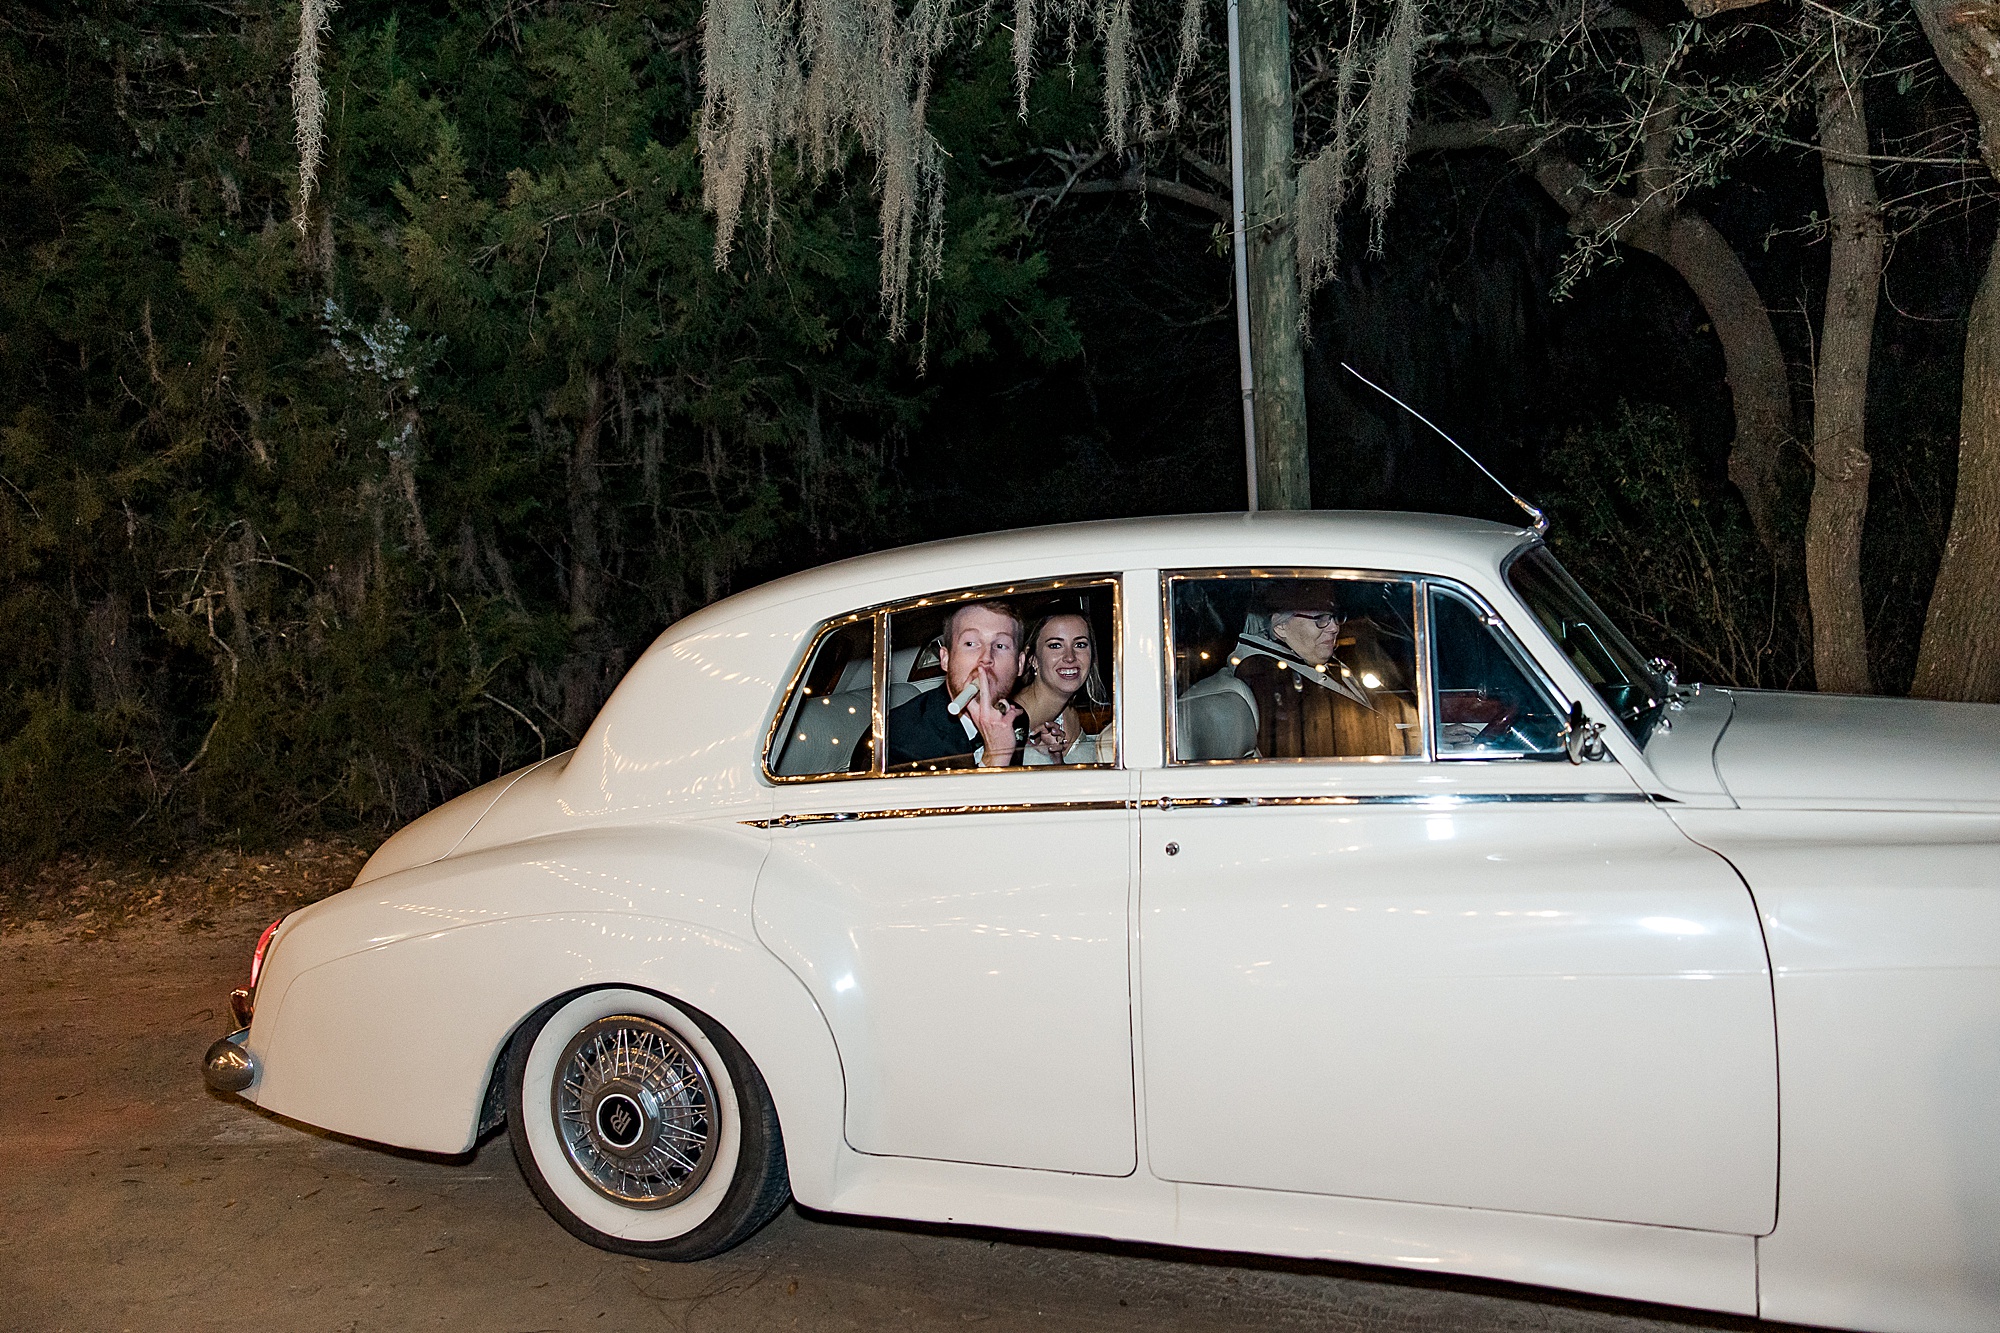 newlyweds exit the Boone Hall Plantation Wedding in a getaway car